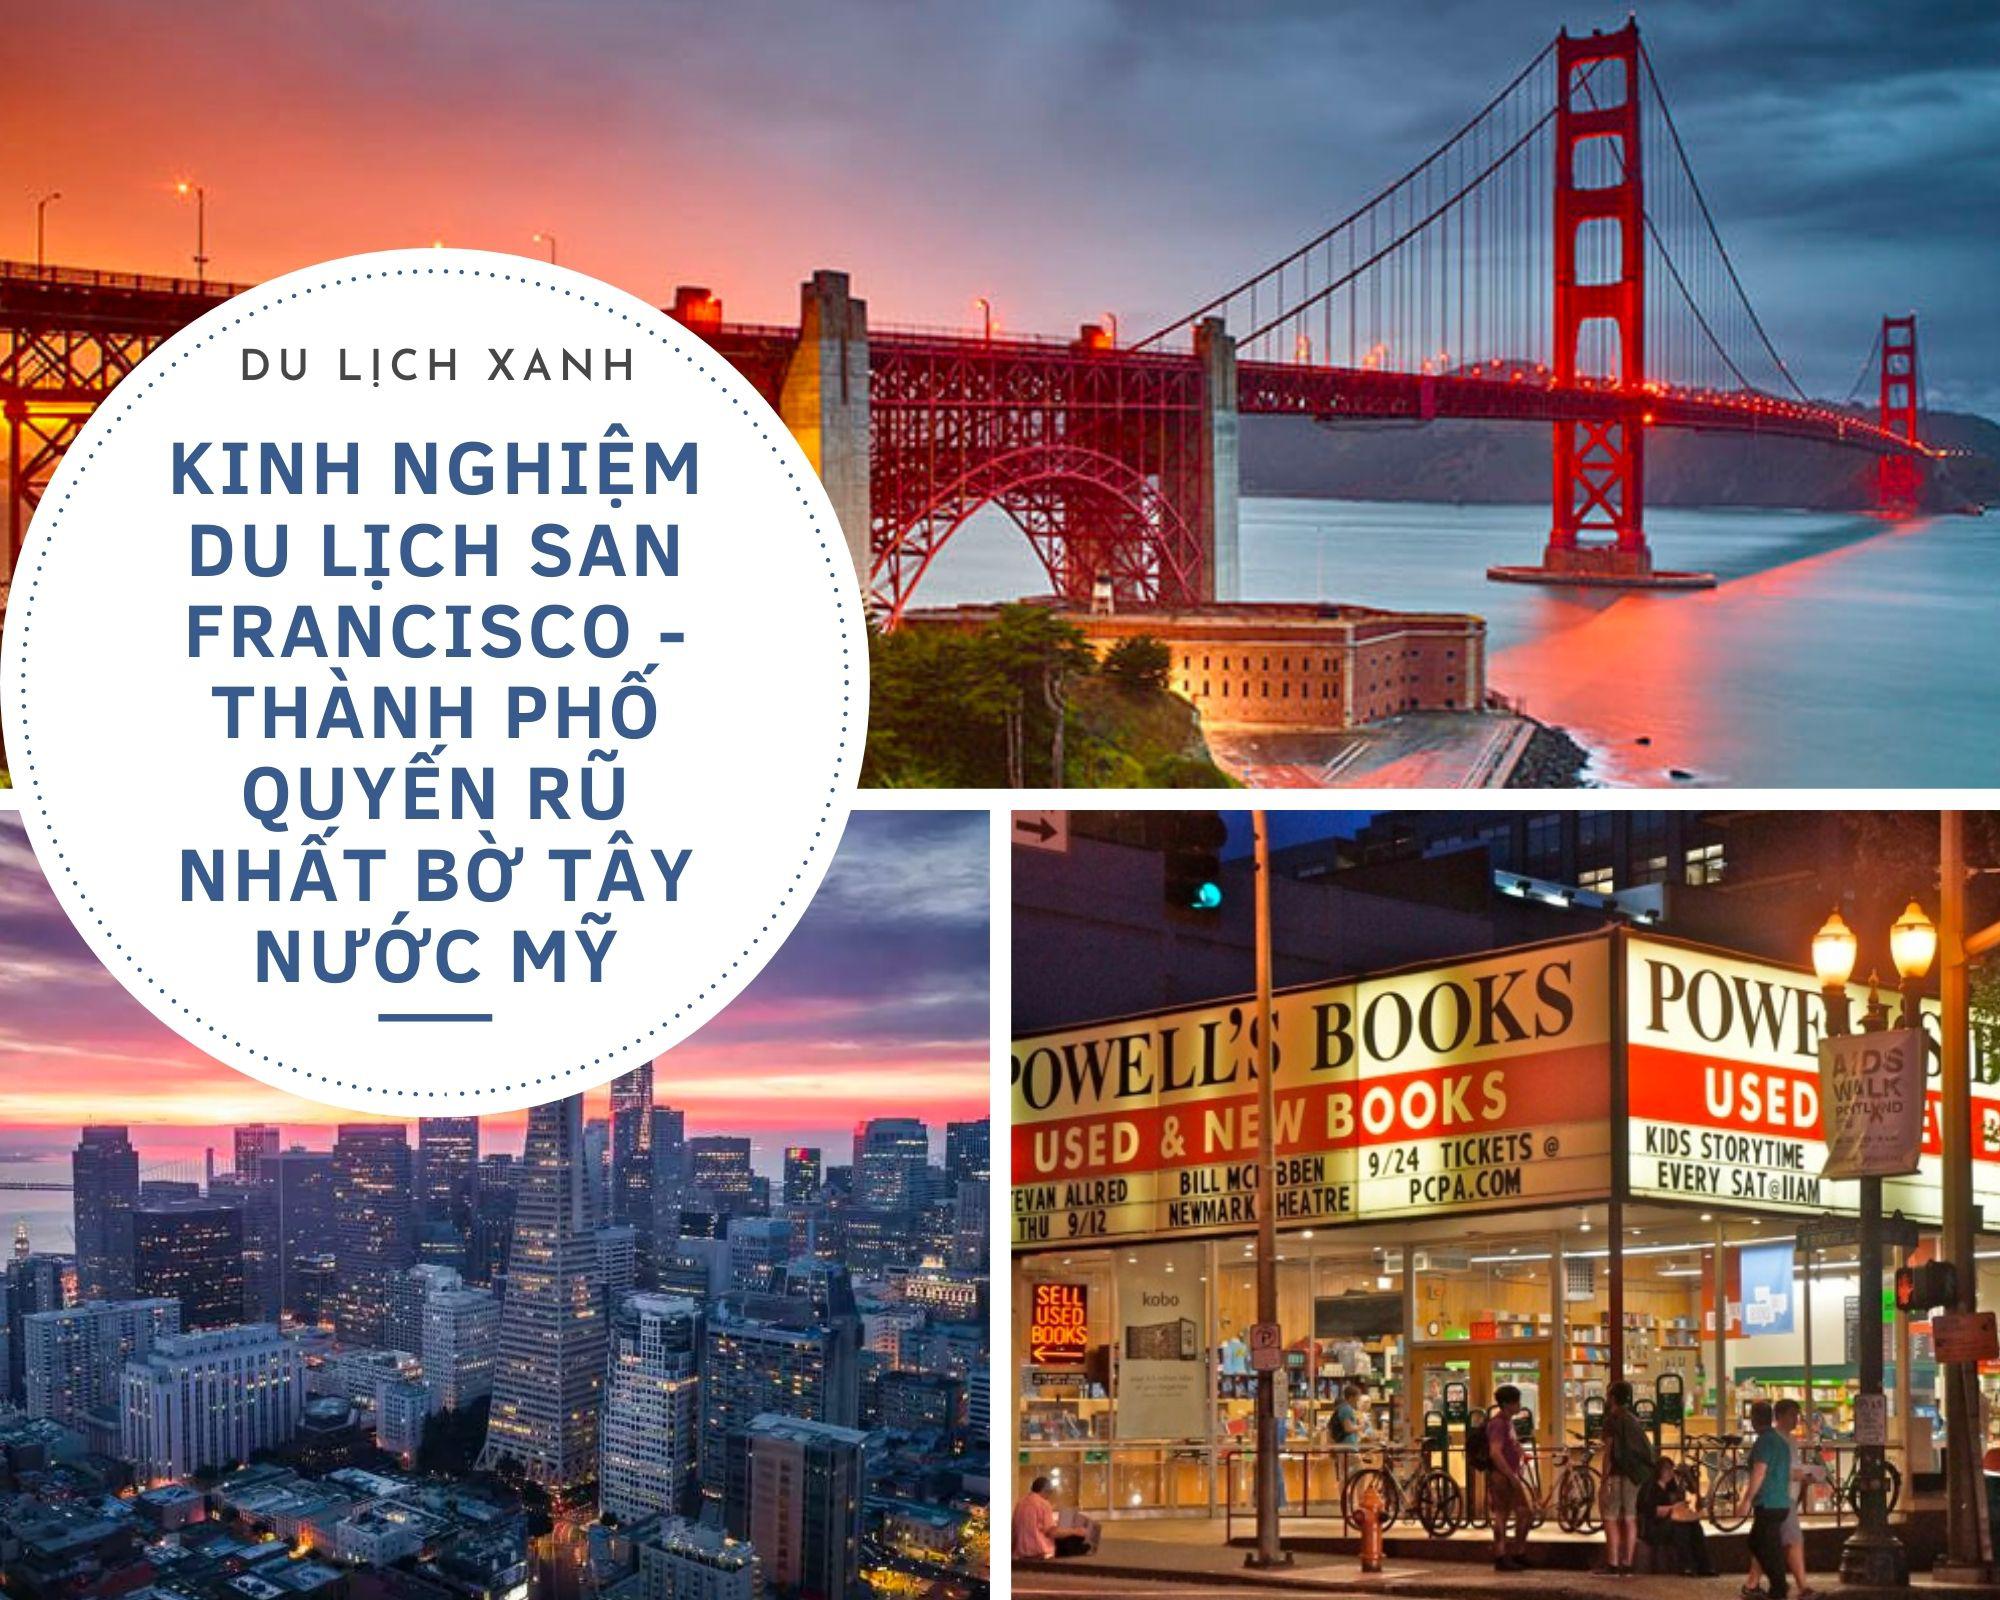 Kinh nghiệm du lịch San Francisco - Thành phố quyến rũ nhất bờ Tây nước Mỹ